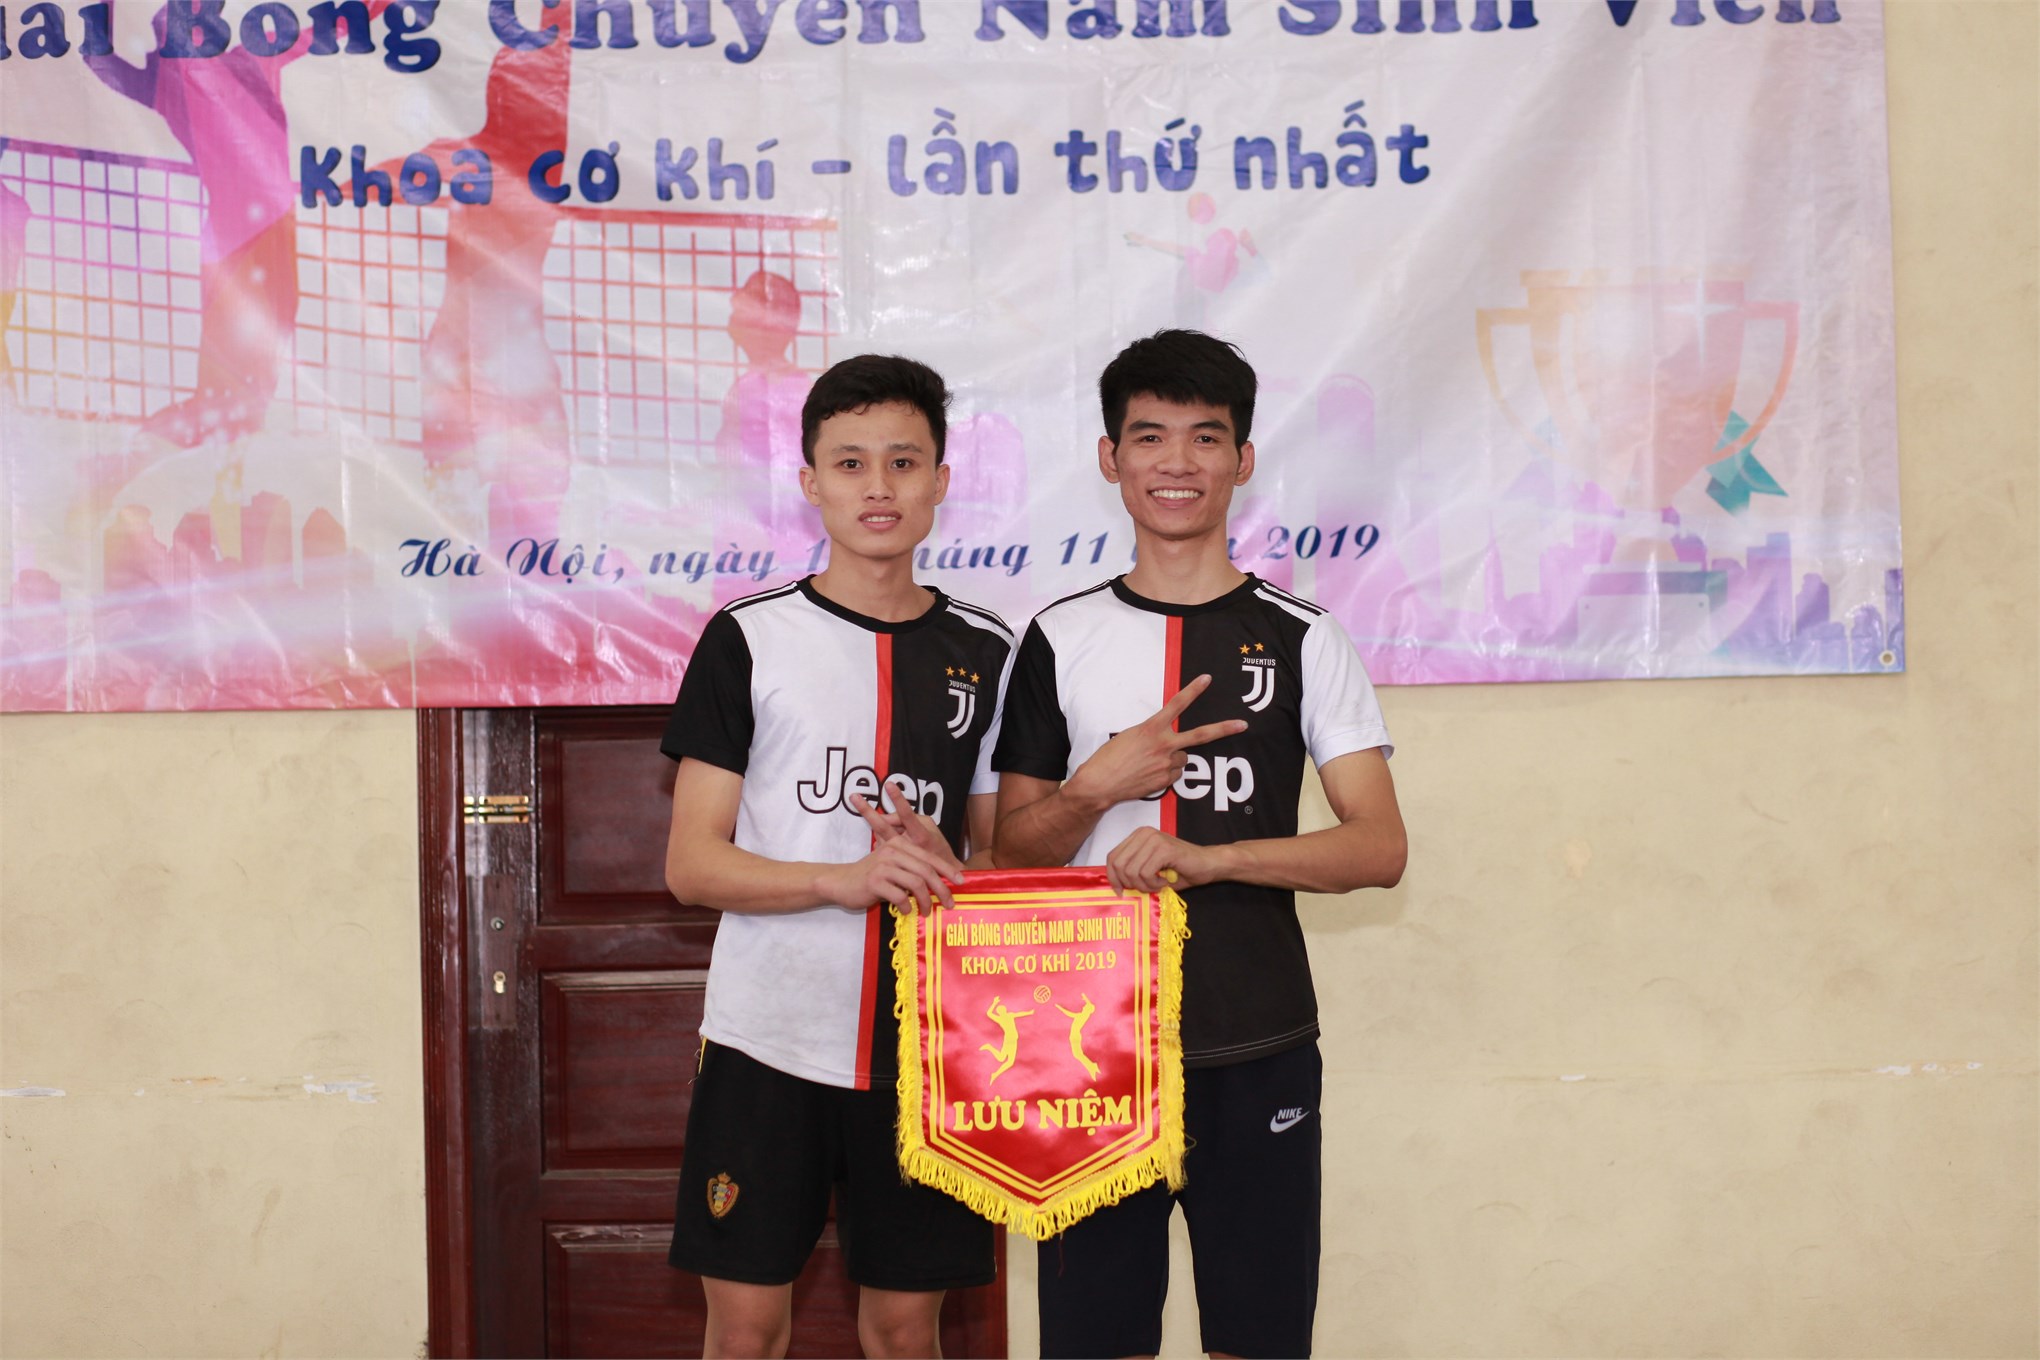 Đội 3 giành giải nhất Giải bóng chuyền sinh viên khoa Cơ khí năm 2019